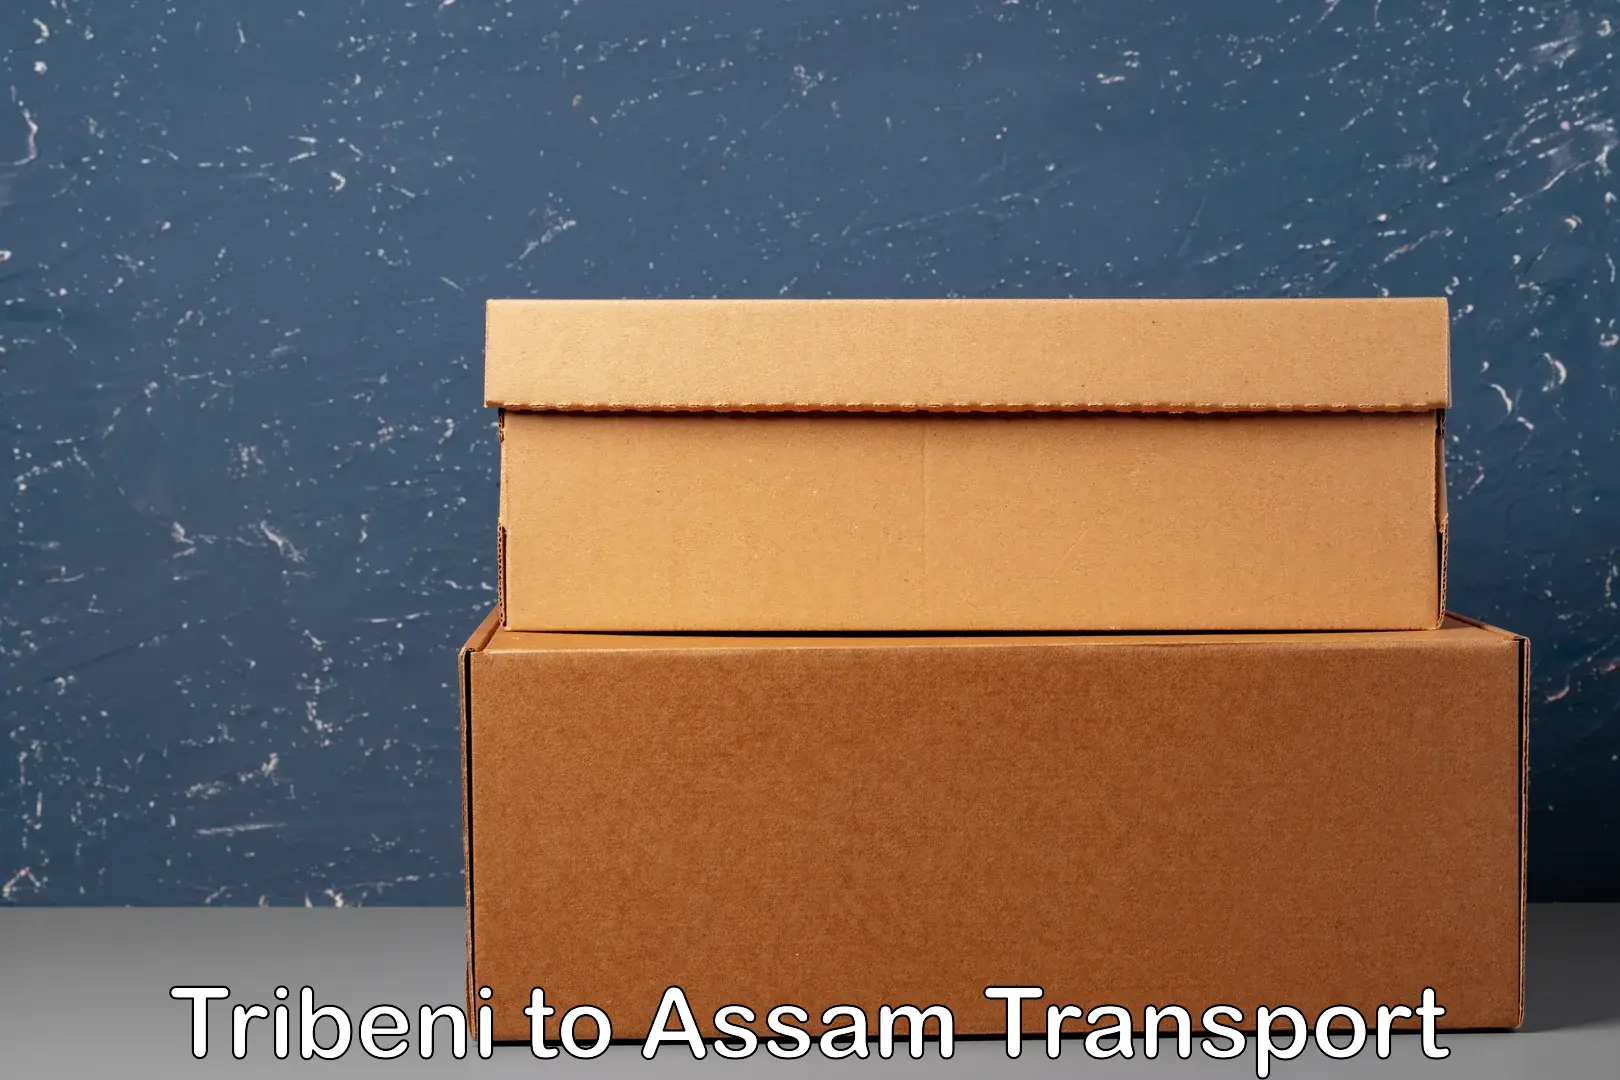 Daily parcel service transport Tribeni to Assam